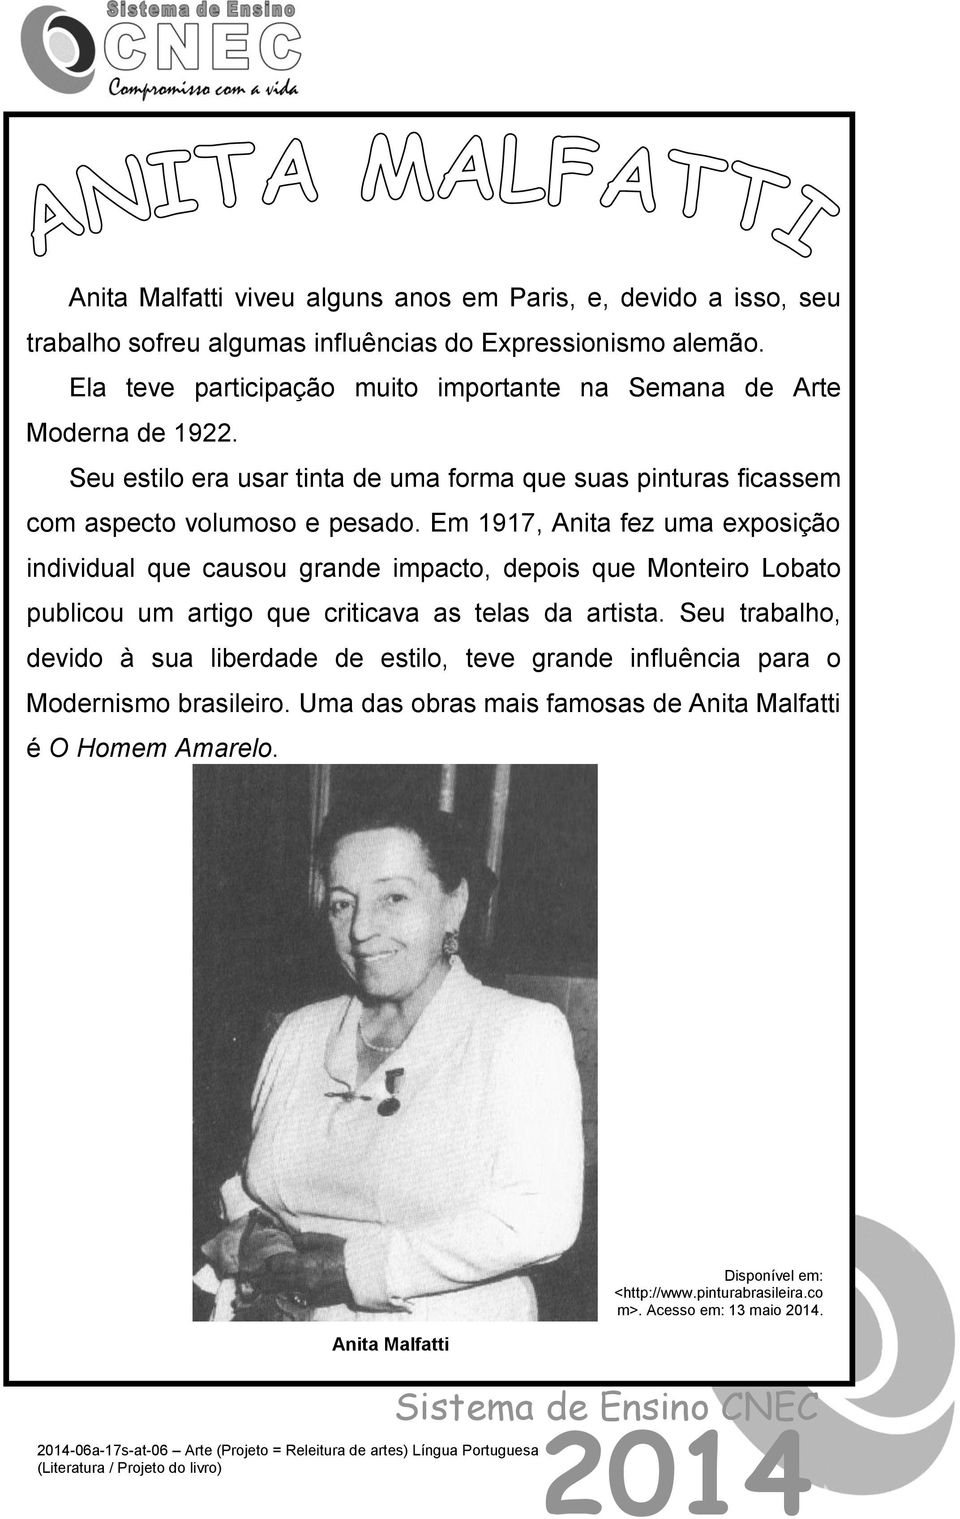 Em 1917, Anita fez uma exposição individual que causou grande impacto, depois que Monteiro Lobato publicou um artigo que criticava as telas da artista.